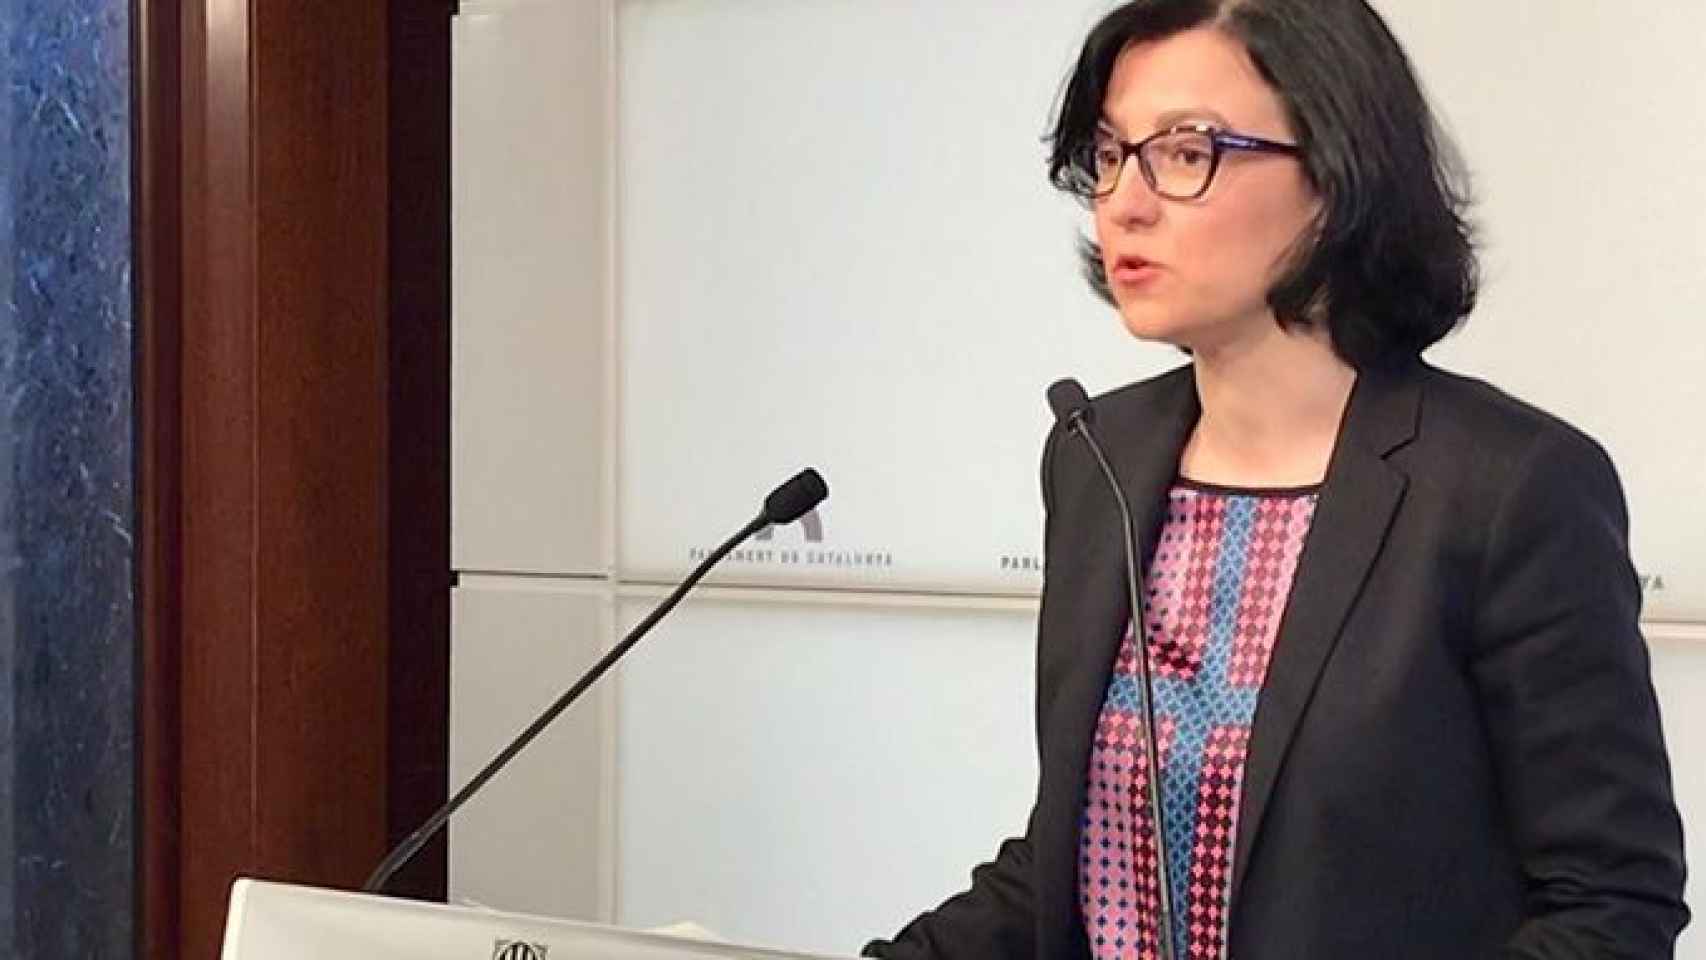 La portavoz del PSC en el Parlament, Eva Granados, valora la propuesta de Jordi Turull como candidato / CG